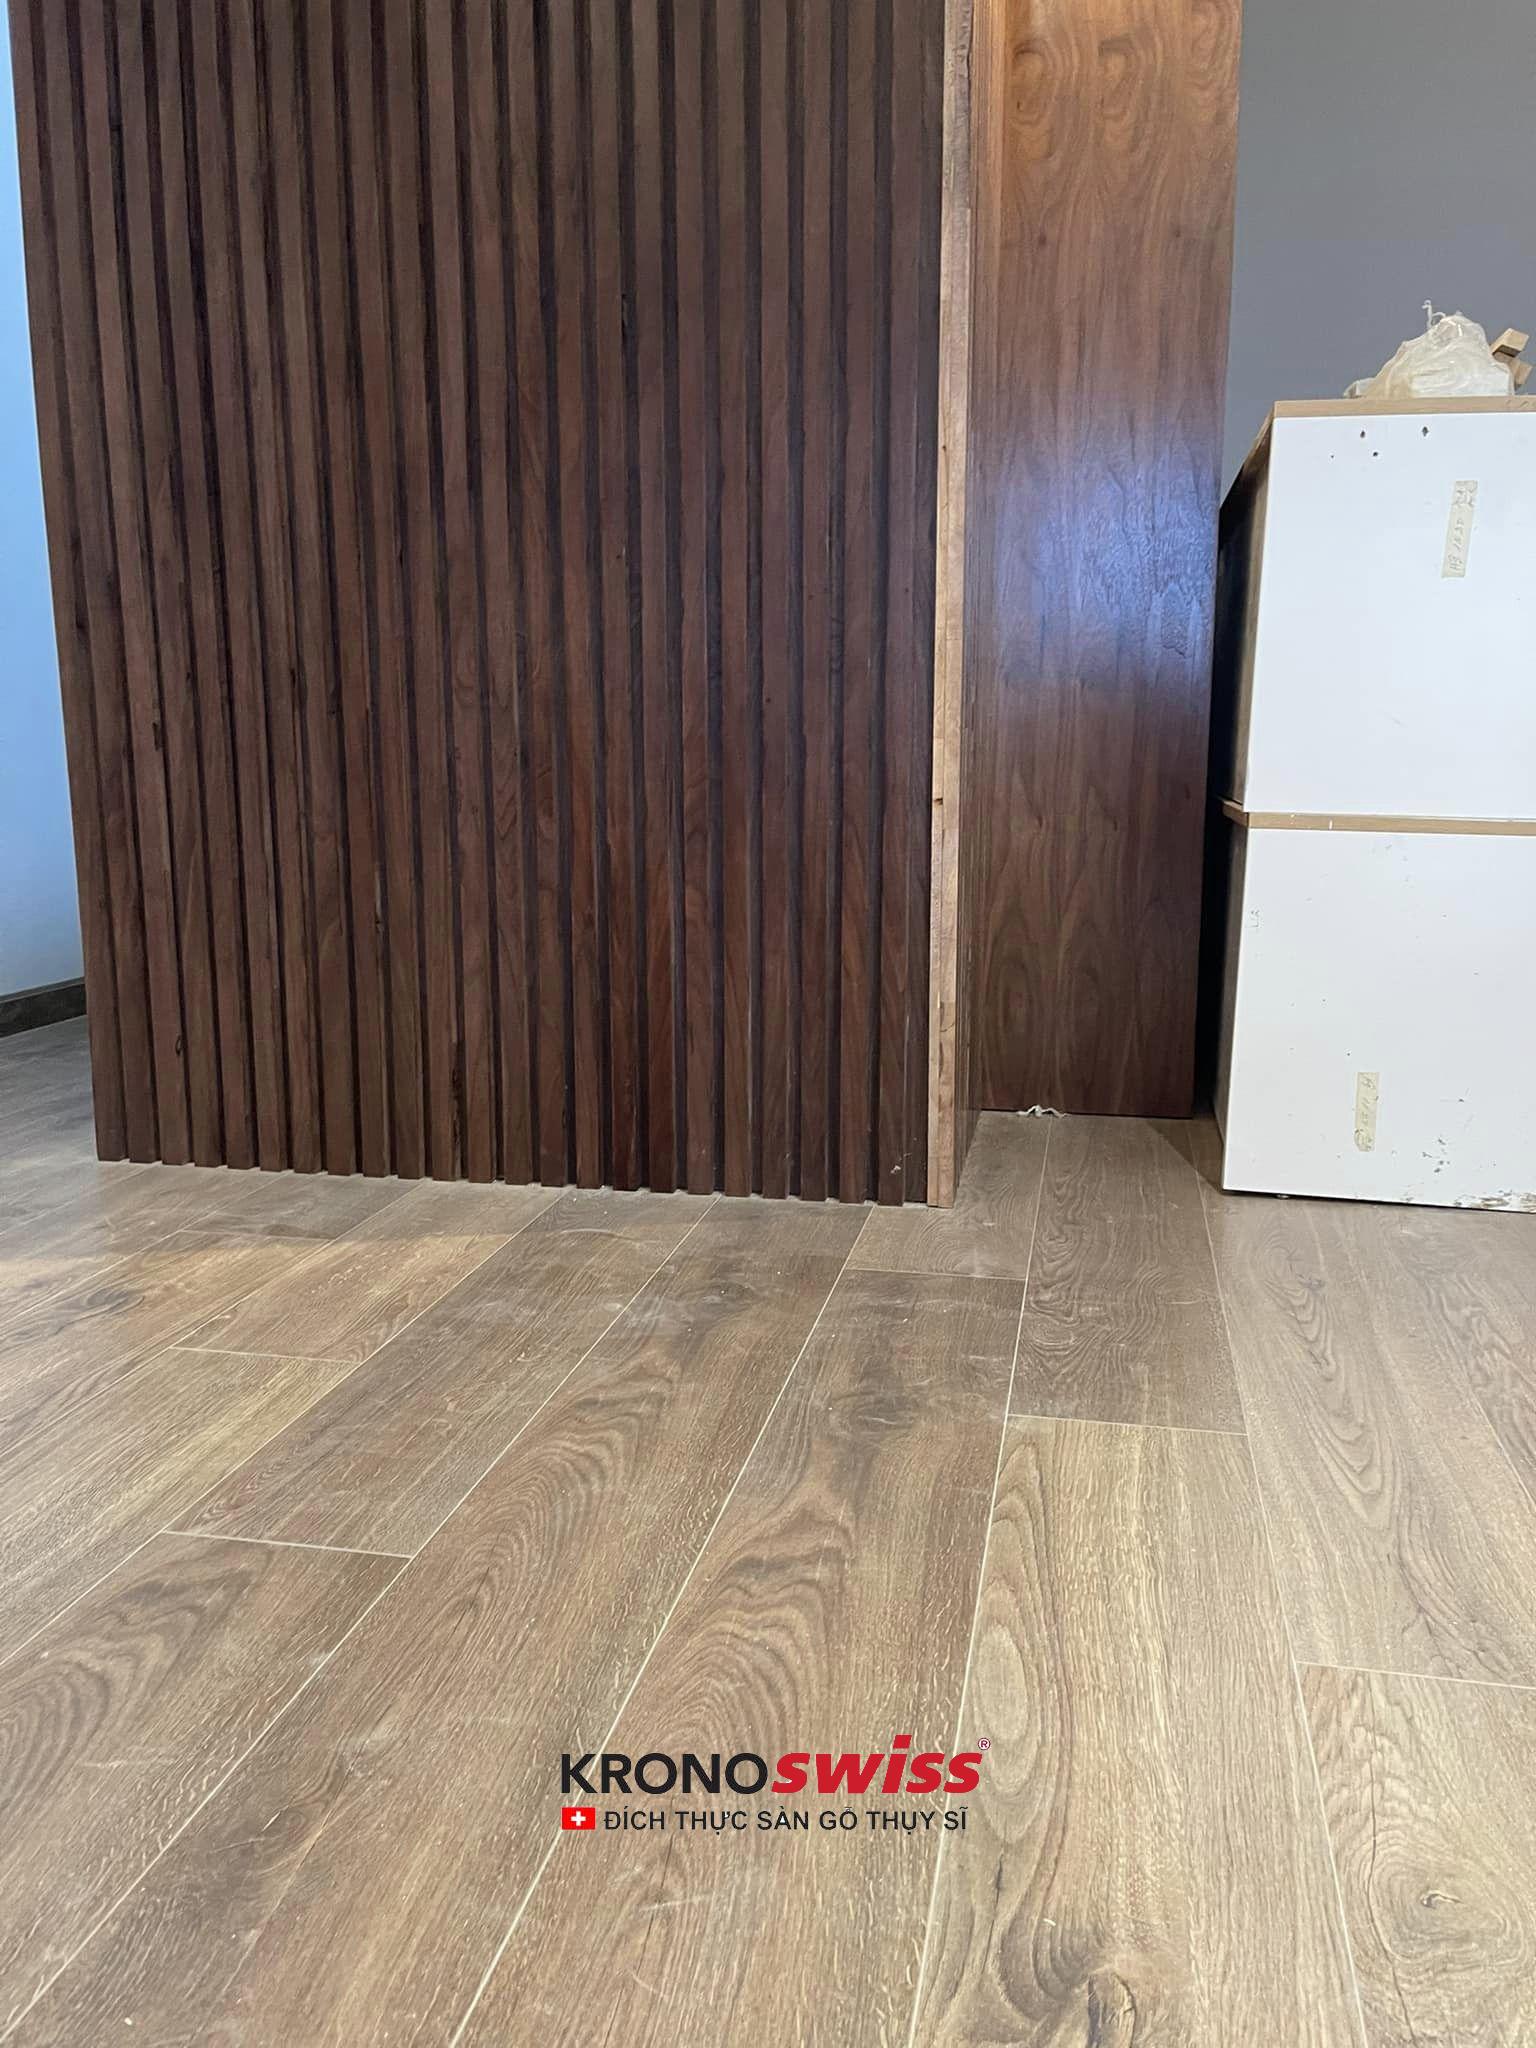 Công trình sàn gỗ Kronoswiss mã D3783 tại căn hộ Sunrise